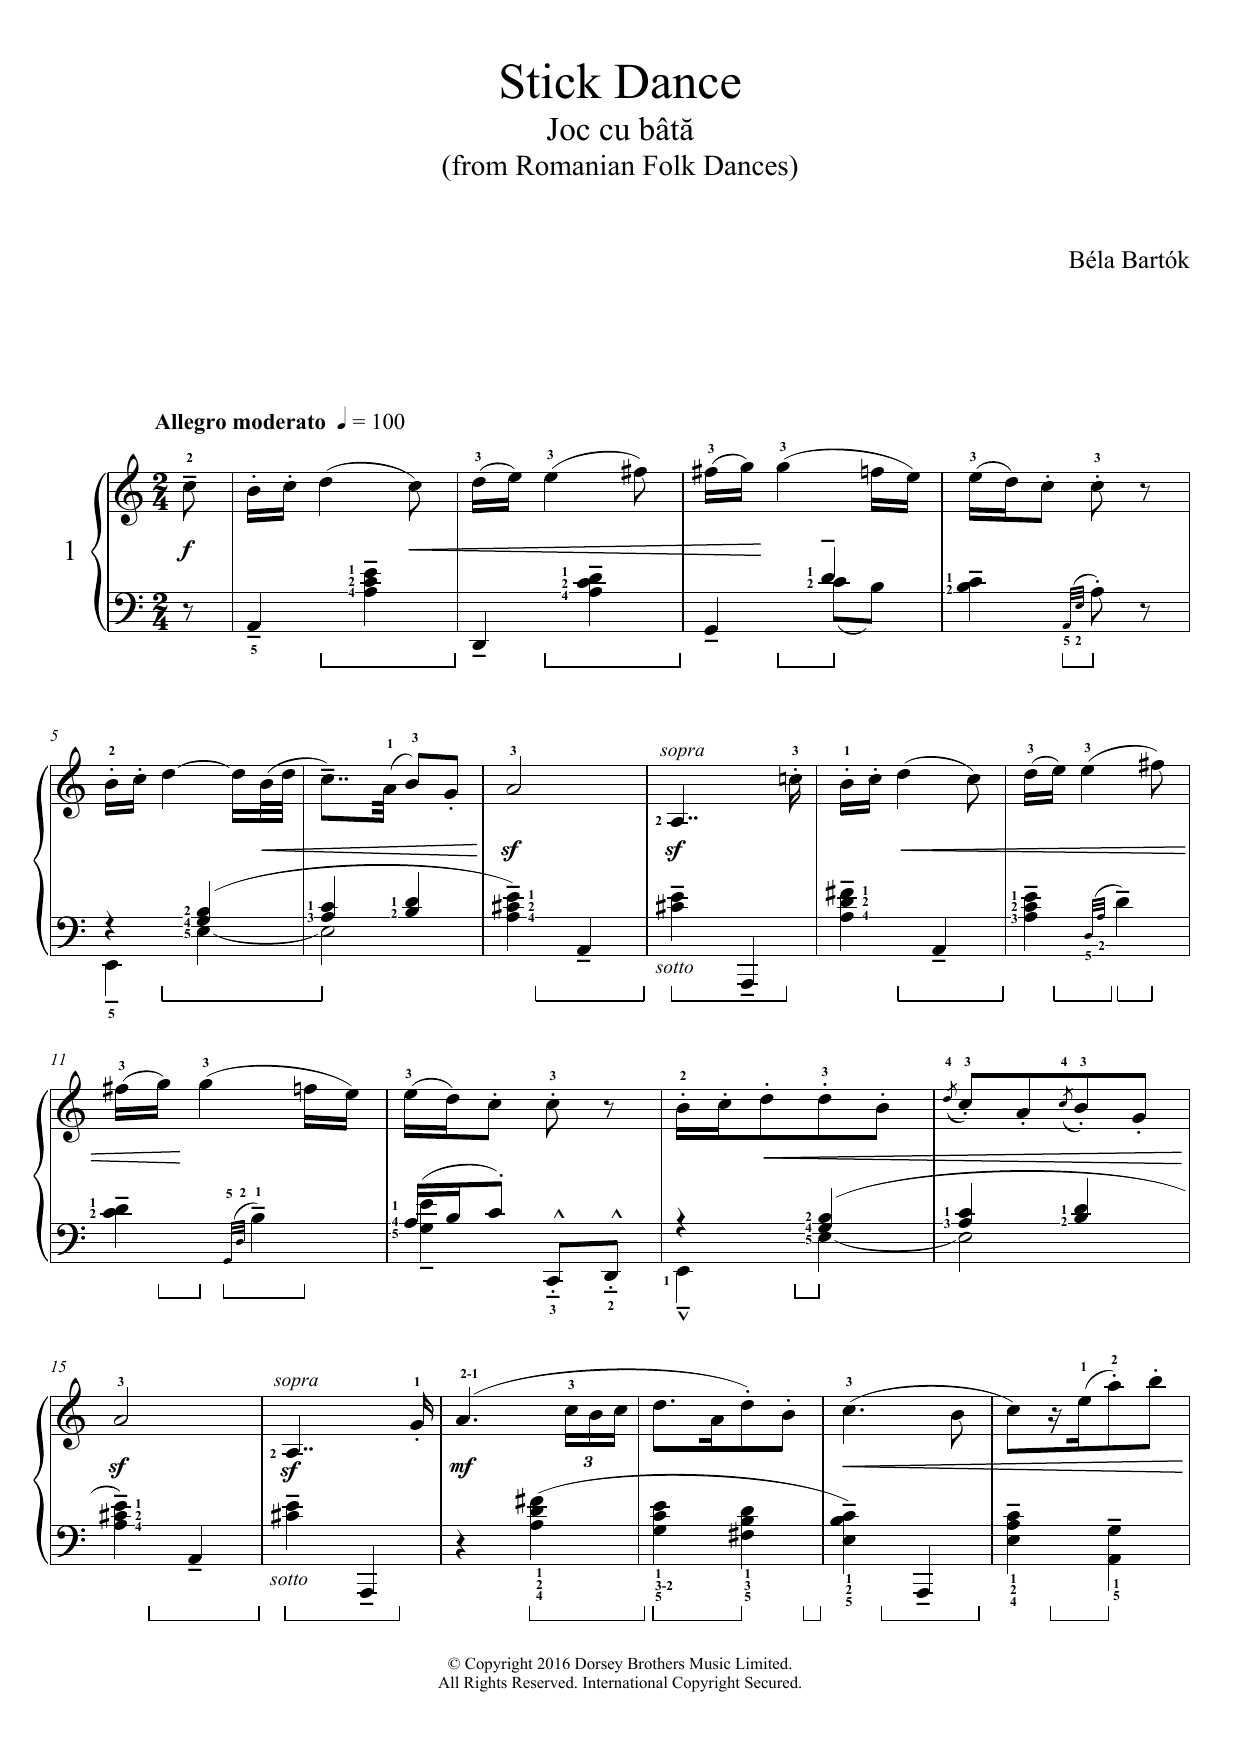 Download Bela Bartok Stick Dance (from Romanian Folk Dances) Sheet Music